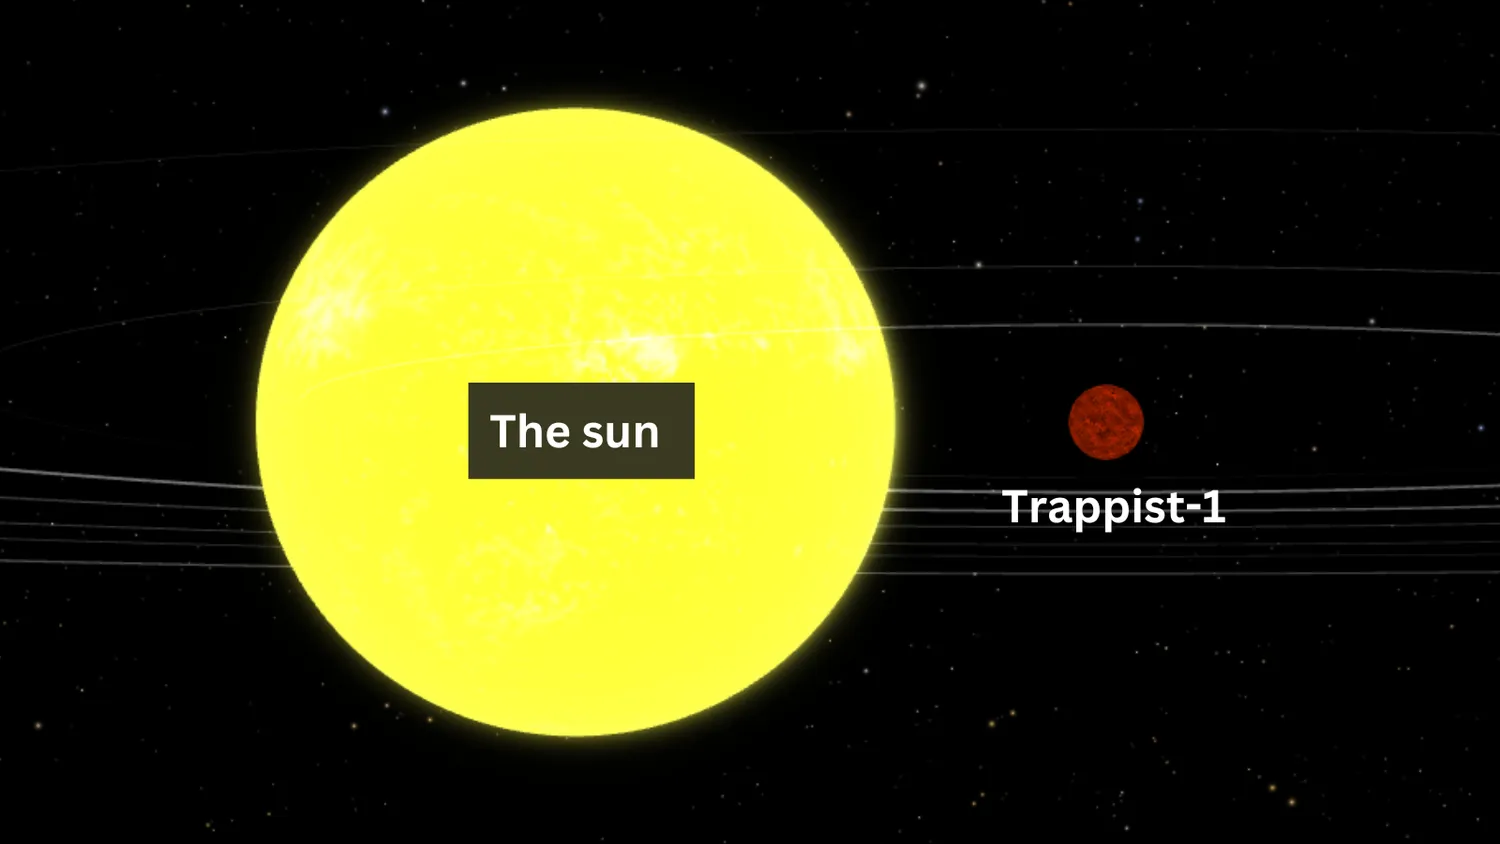 Eine Illustration, die den Größenunterschied zwischen Trappist-1 und der Sonne zeigt. Die Sonne ist viel größer.